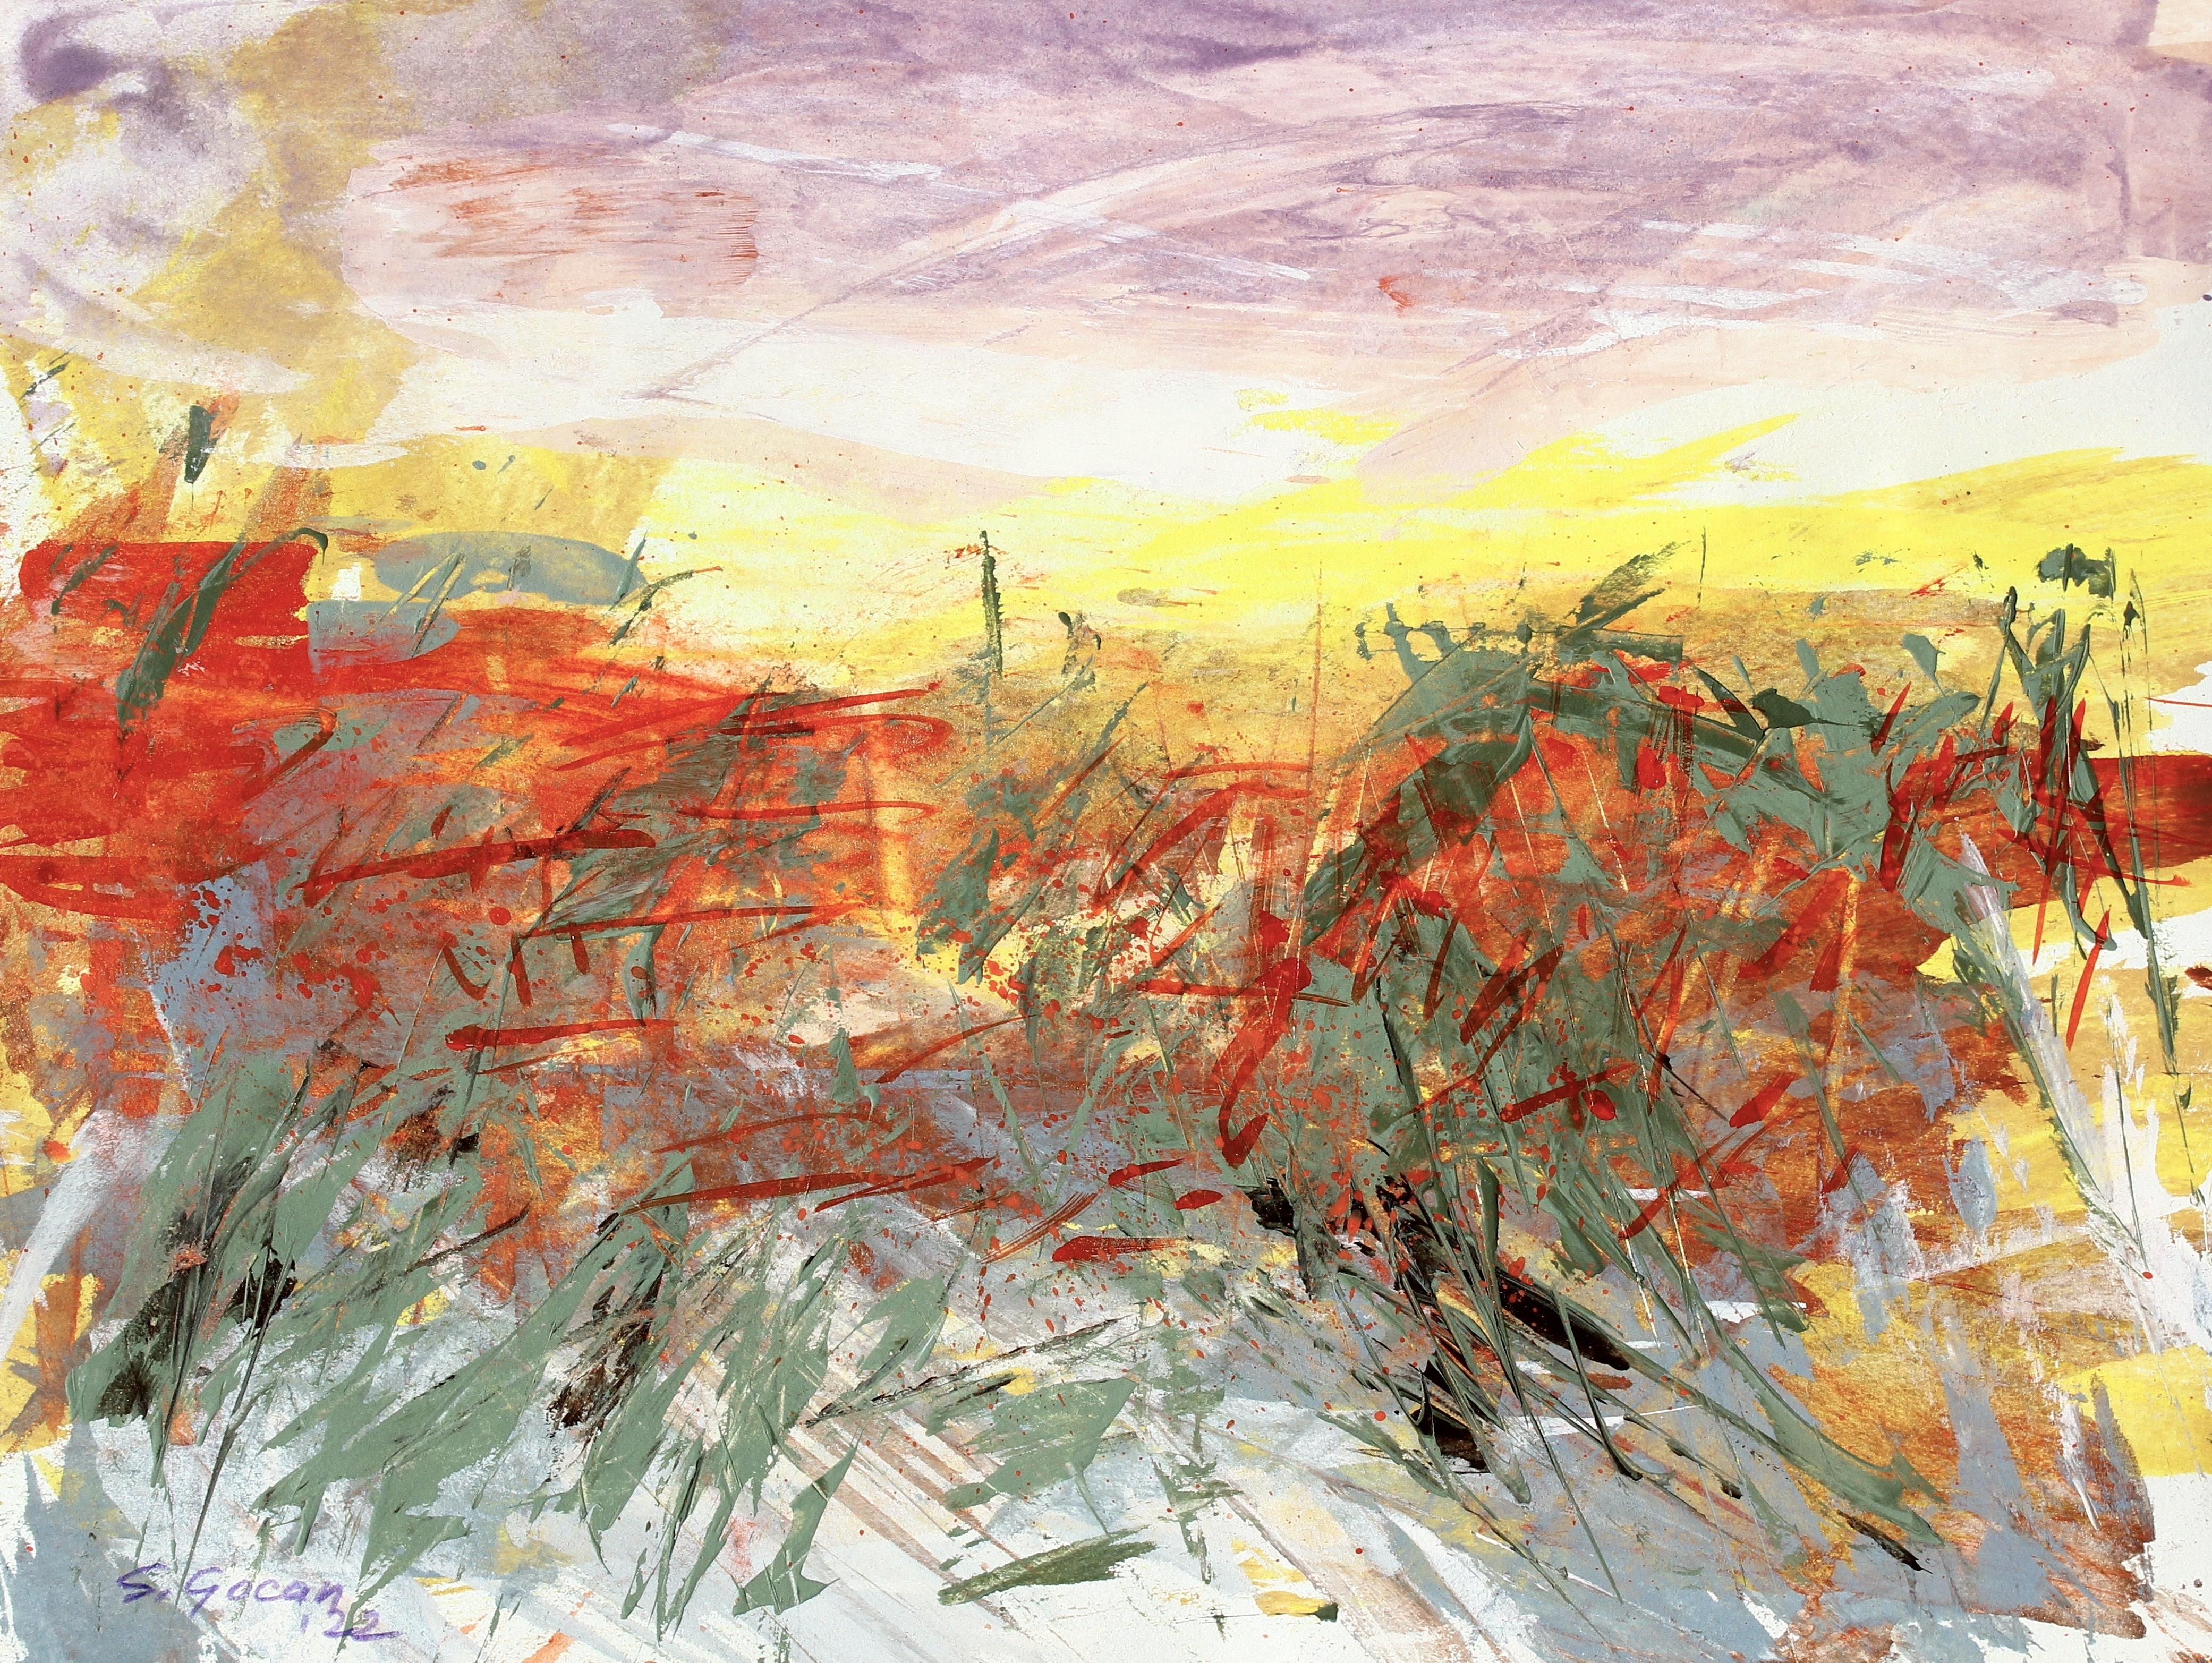 Paysage désertique n°4, peinture de paysage expressionniste abstrait contemporaine signée